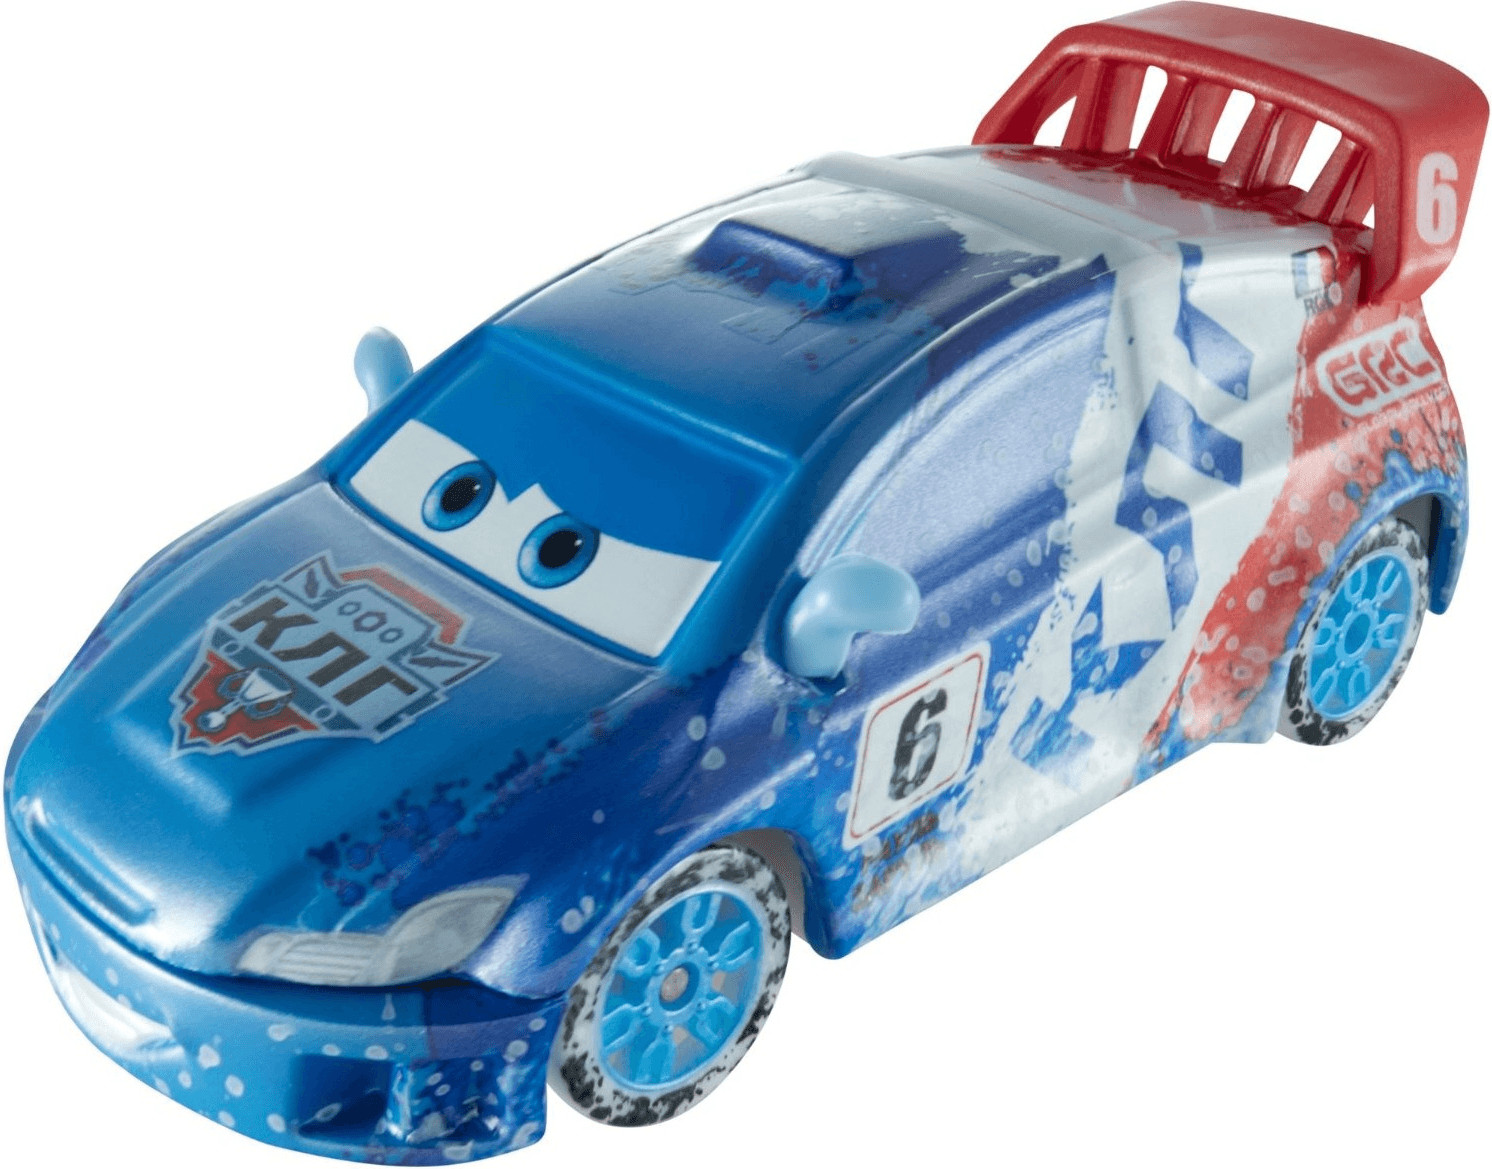 Mattel Cars Ice Racers Raoul ÇaRoule